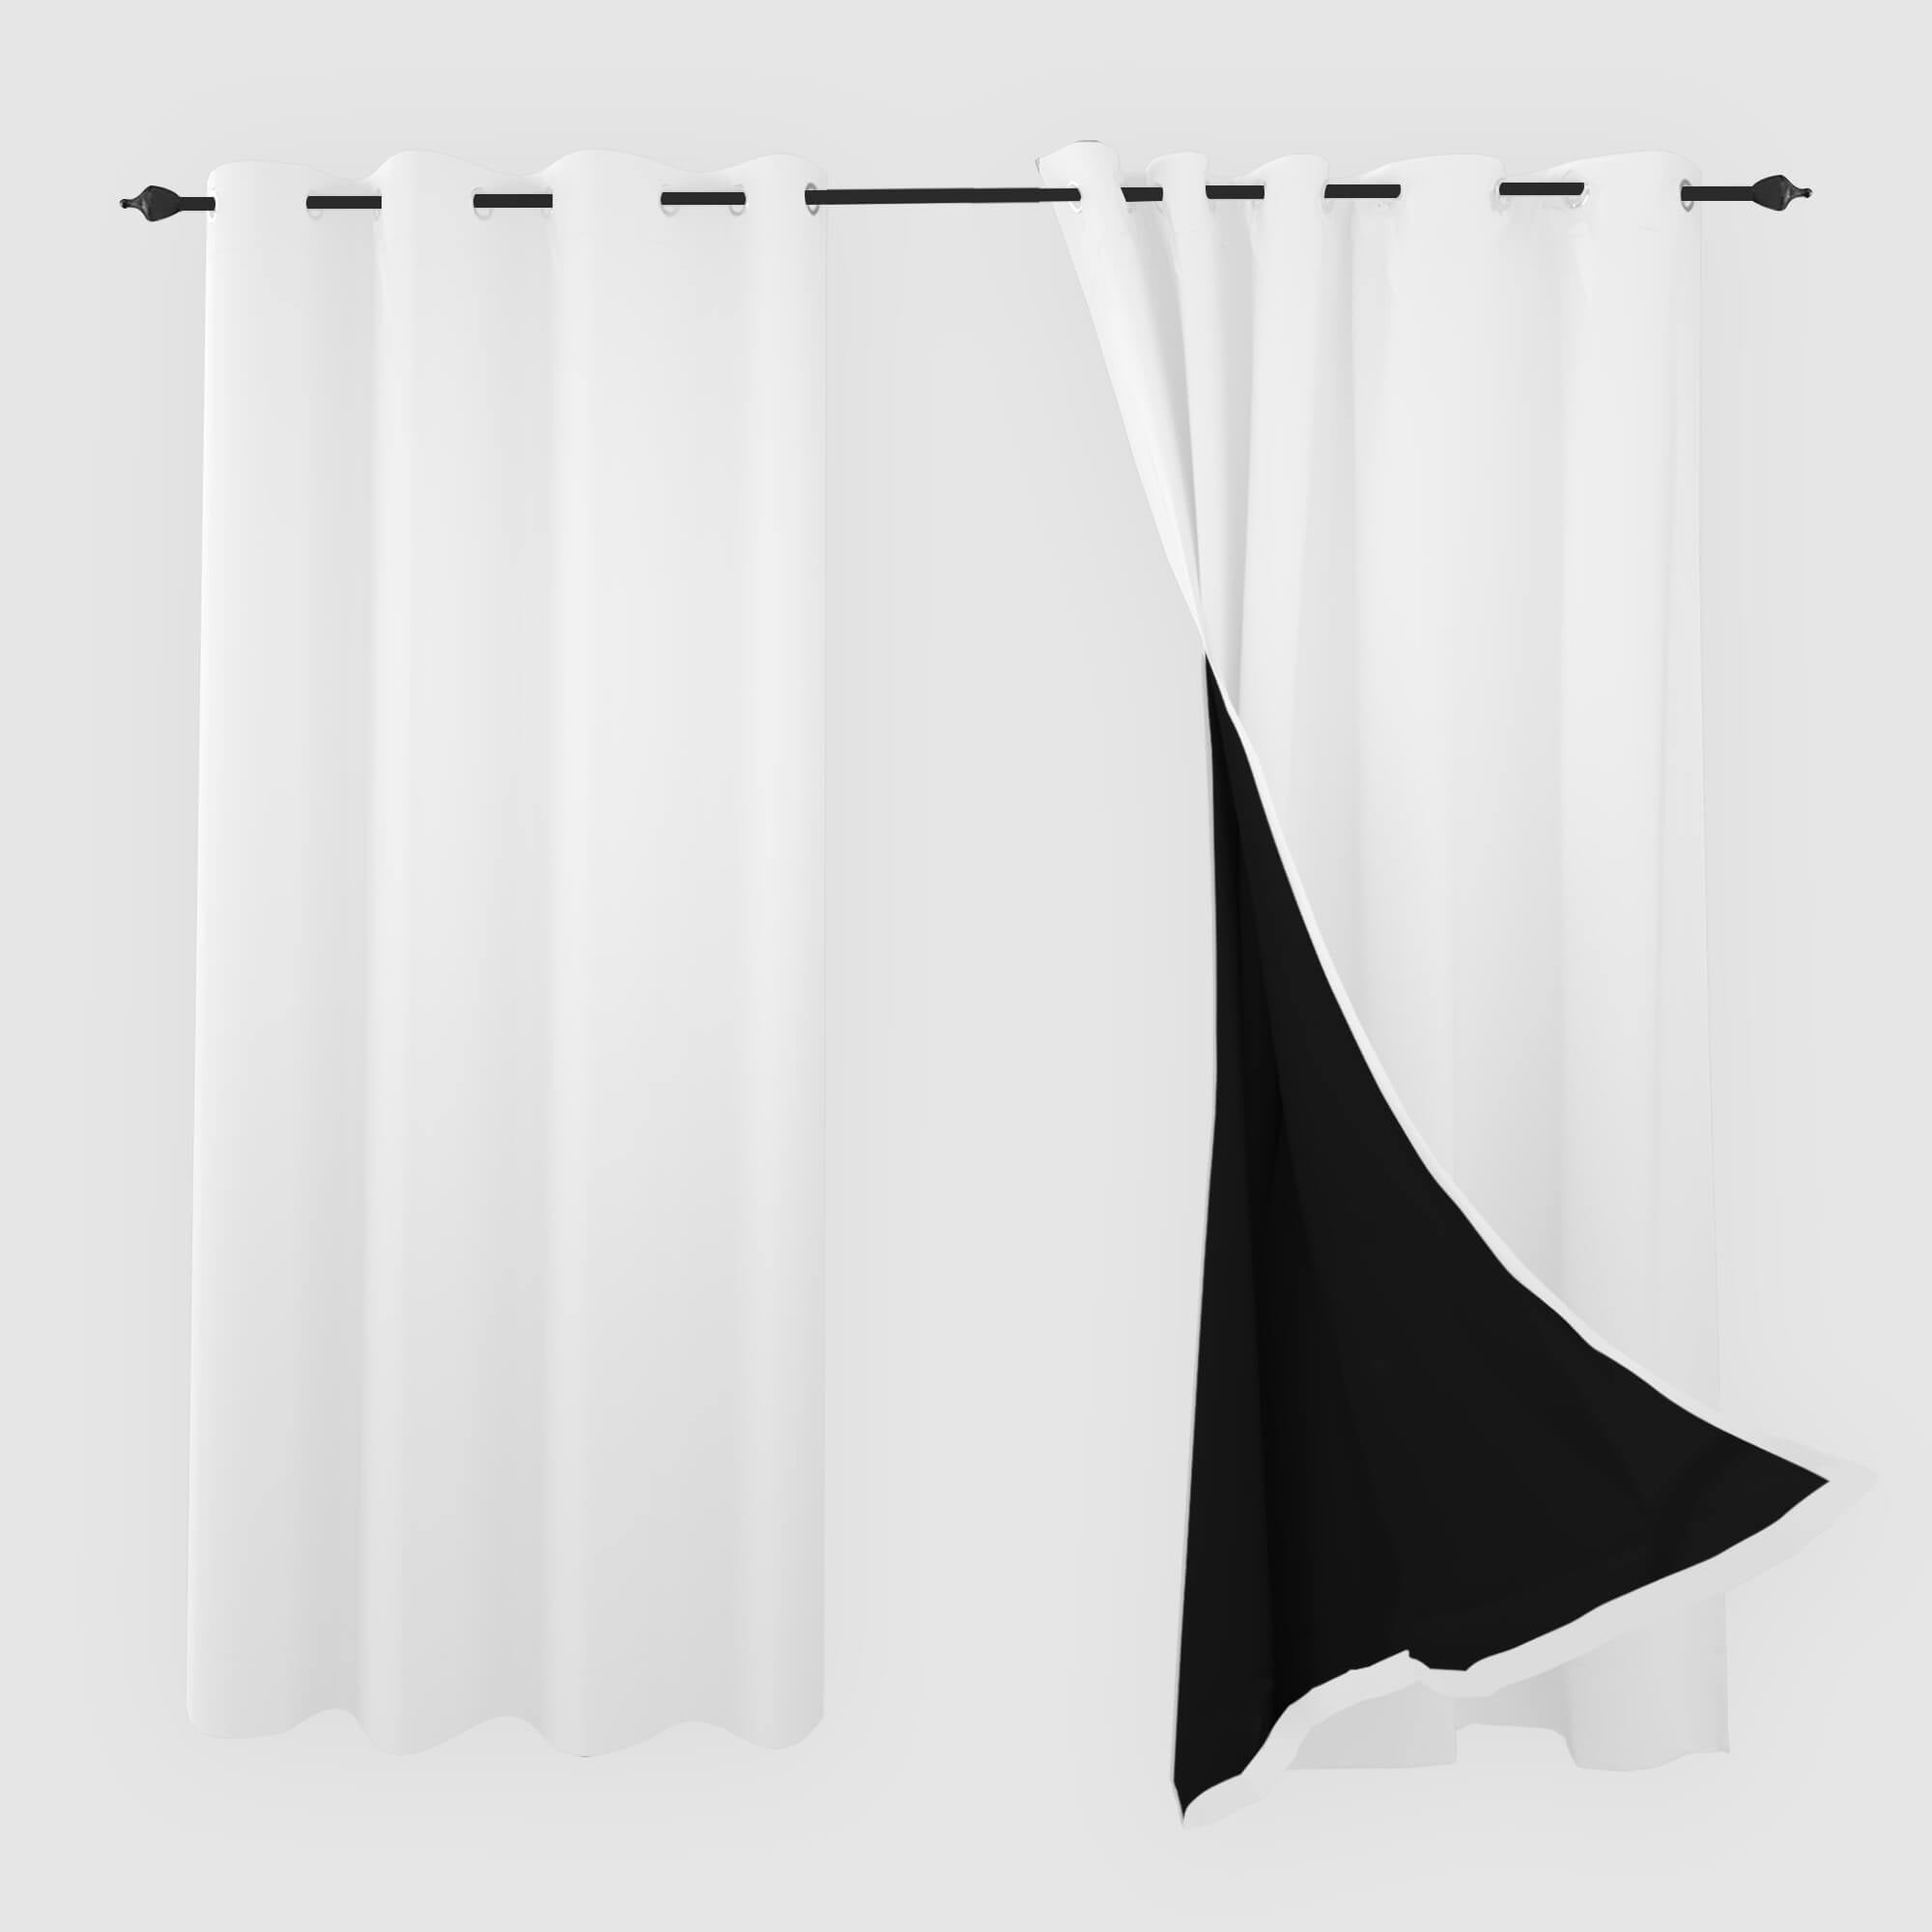 SNOWCITY Blackout Curtains White - Grommet Top